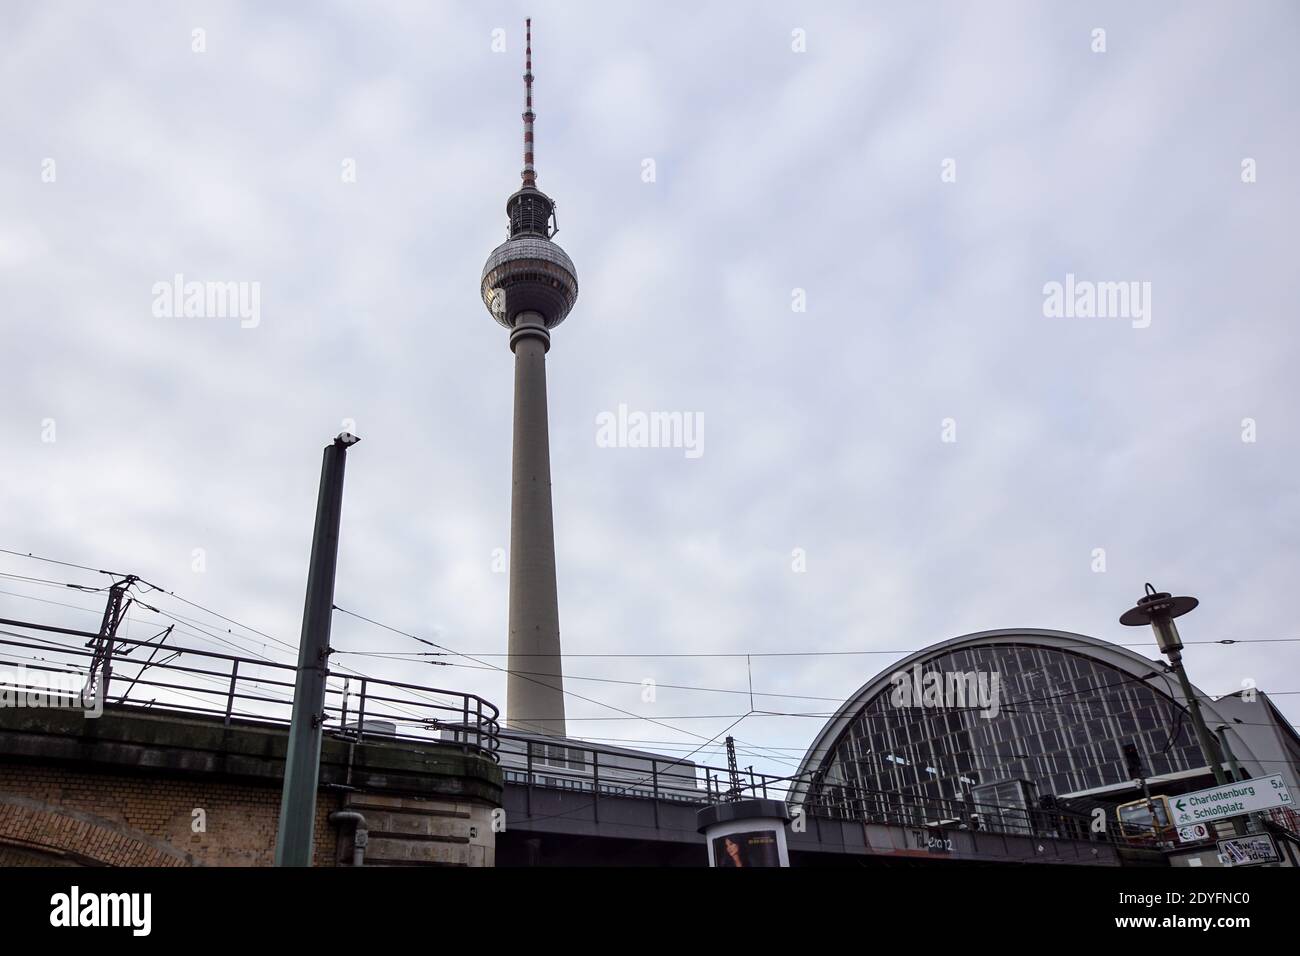 Berlín, Alemania - 12 de noviembre de 2020 - el histórico Friedrichsbcke con edificios antiguos y la famosa torre de televisión de Berlín Berliner Fernsehturm en el Foto de stock